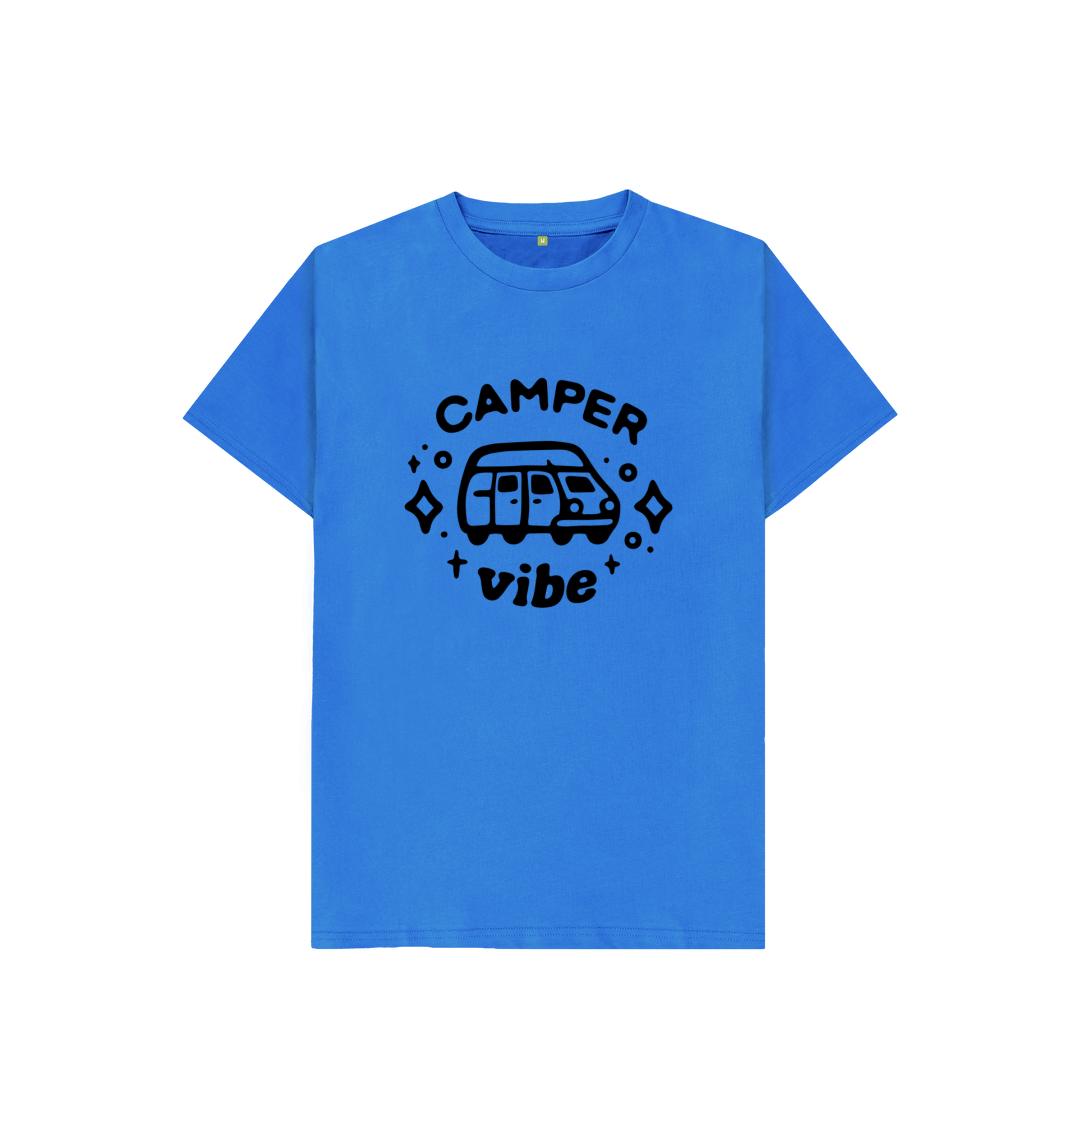 Kids camper tee